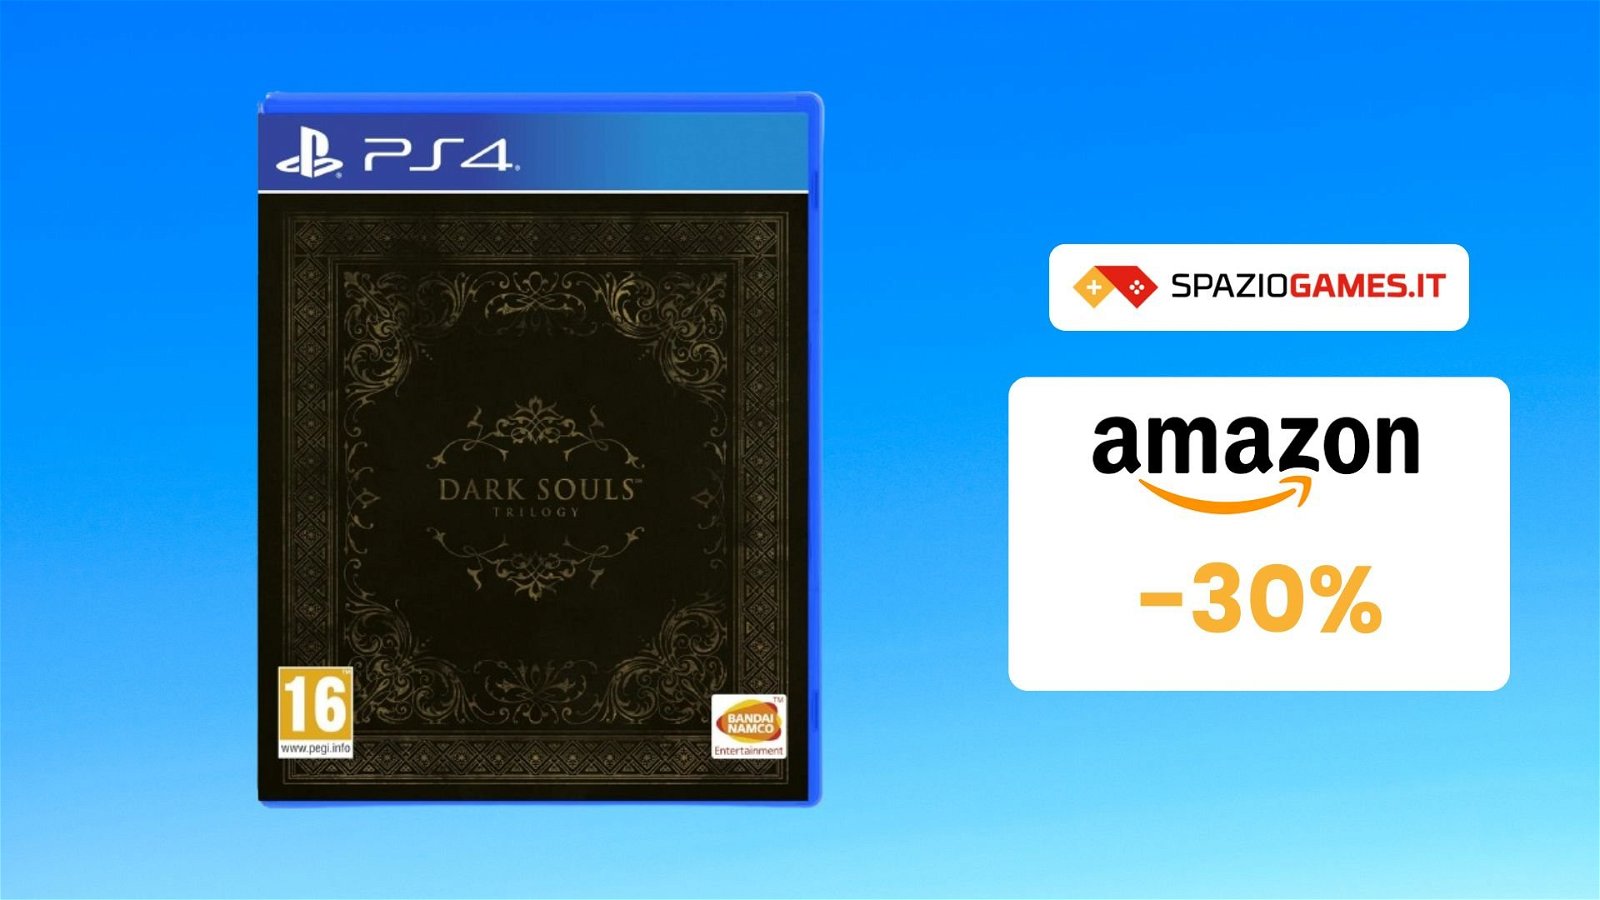 Dark Souls Trilogy a un prezzo SUPER! SOLO 30€!